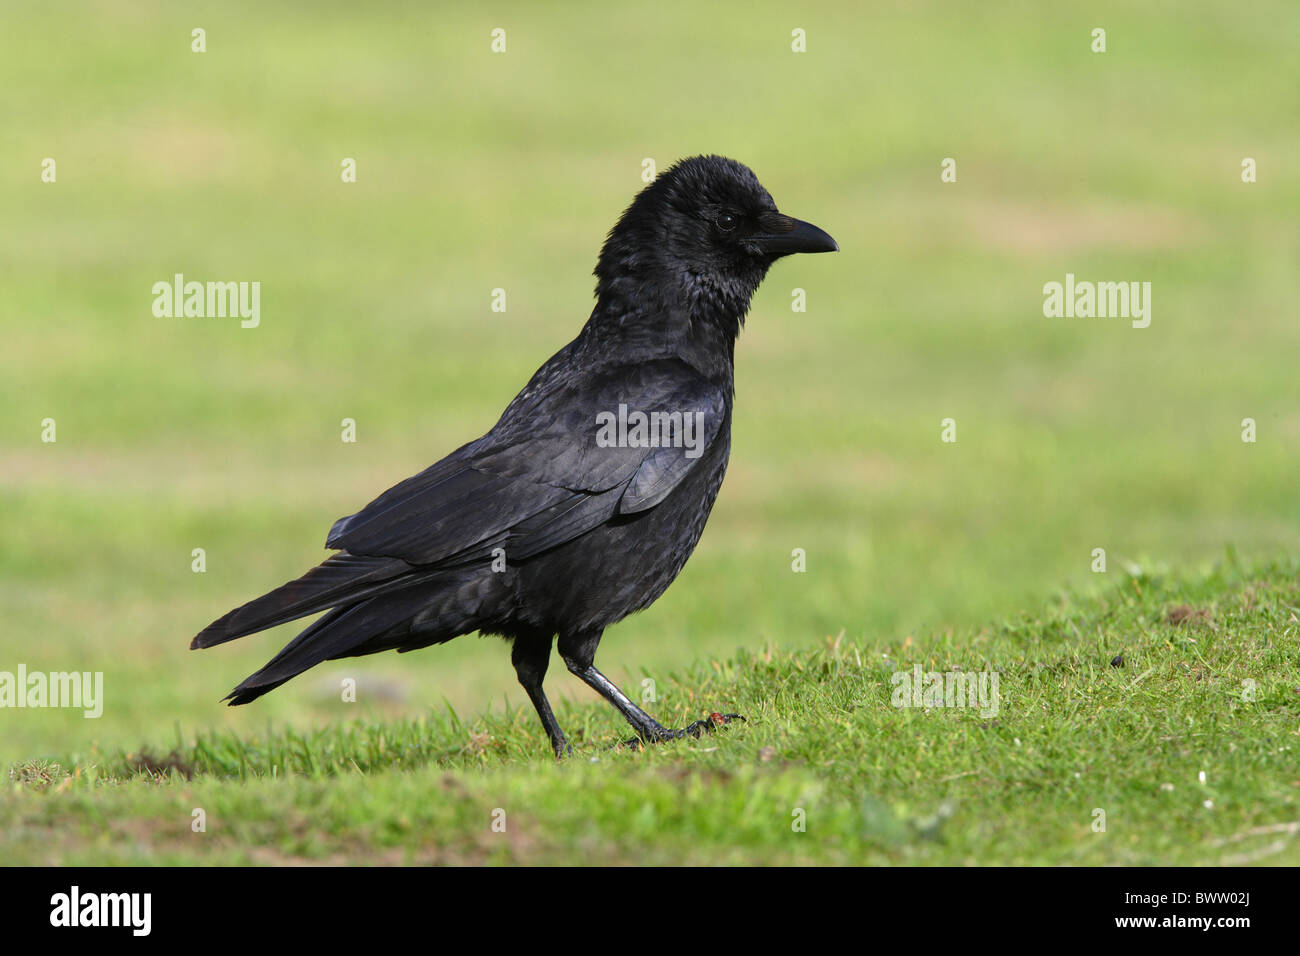 Corneille noire (Corvus corone) adulte, avec des plumes de la tête relevée, debout sur l'herbe courte, Norfolk, Angleterre, juin Banque D'Images